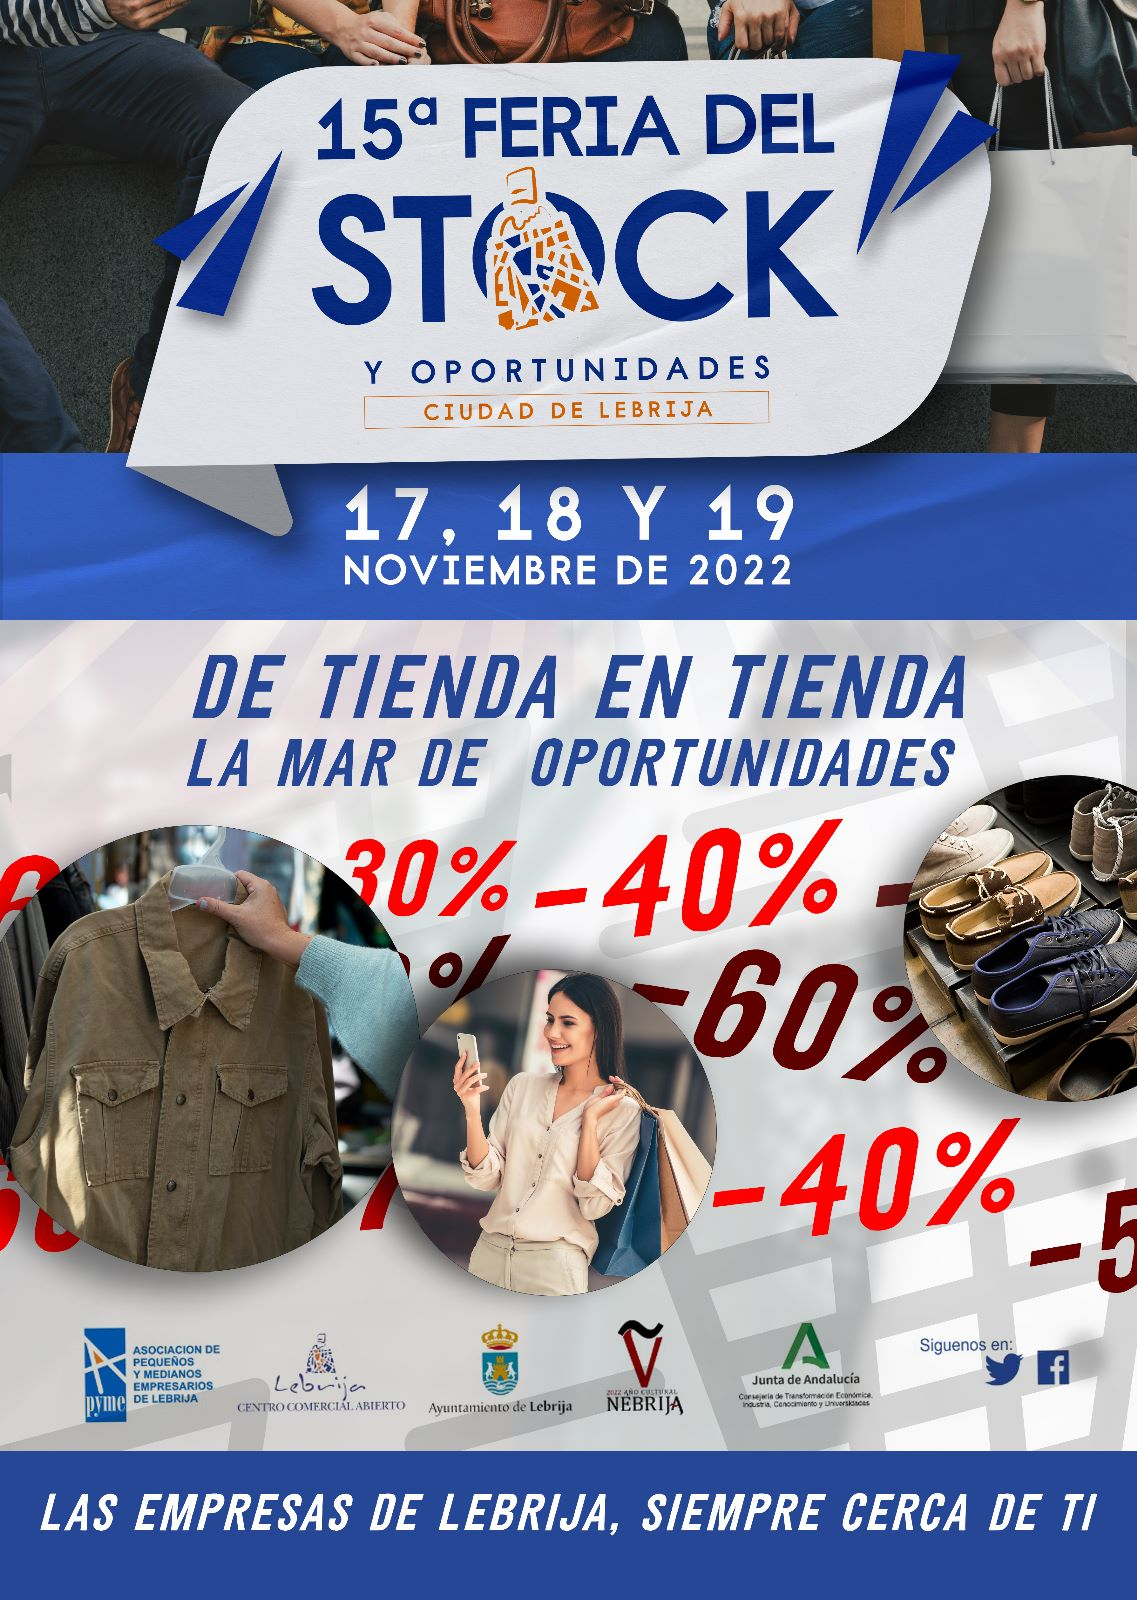 FERIA DEL STOCK 2022 1